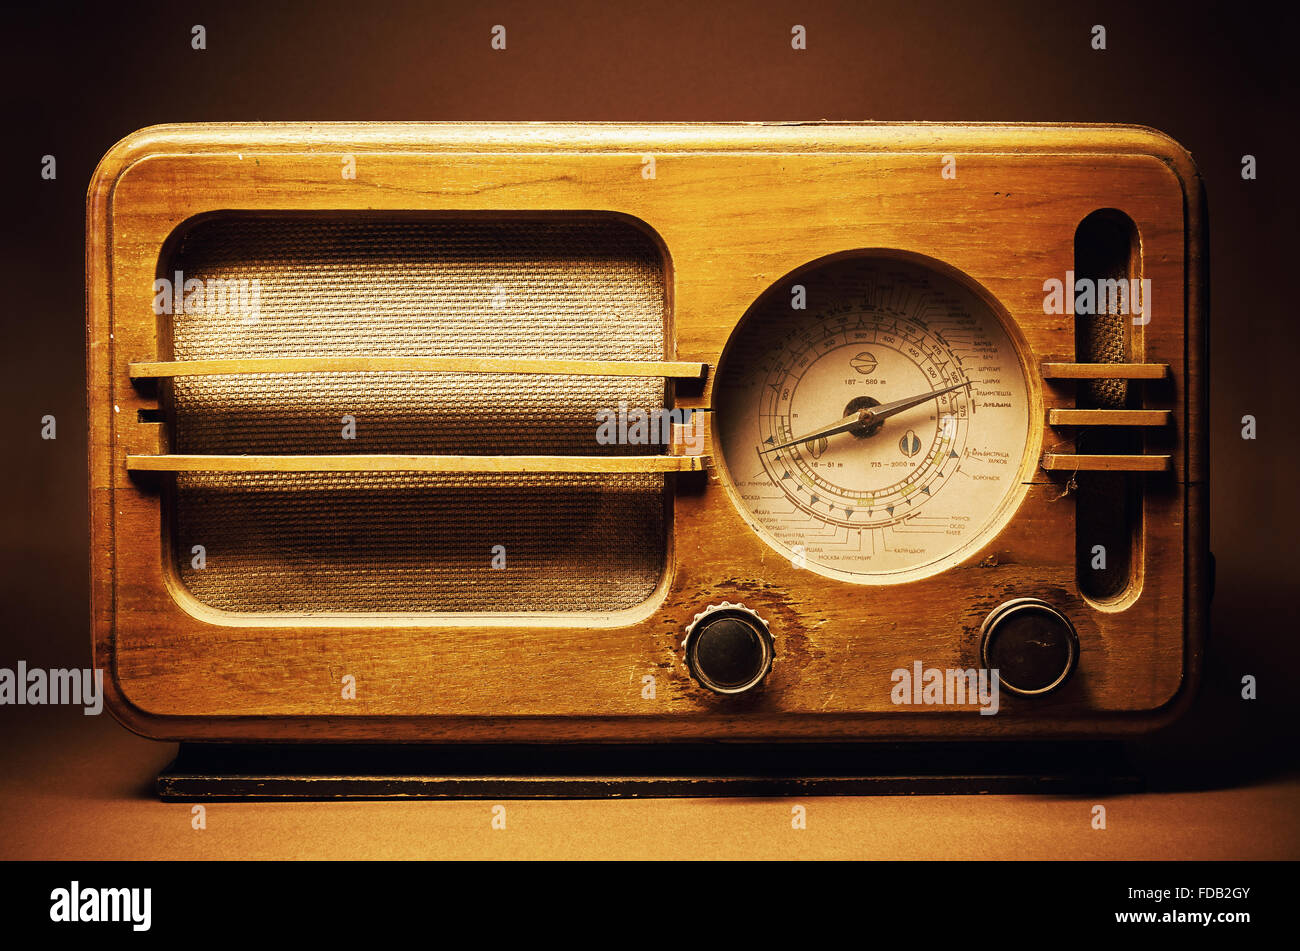 Diseño de un dispositivo de radio de madera antigua. Nombres de ciudades  europeas escritas en cirílico como emisoras de radio. Un estilo retro de  los Balcanes desde el FIR Fotografía de stock -